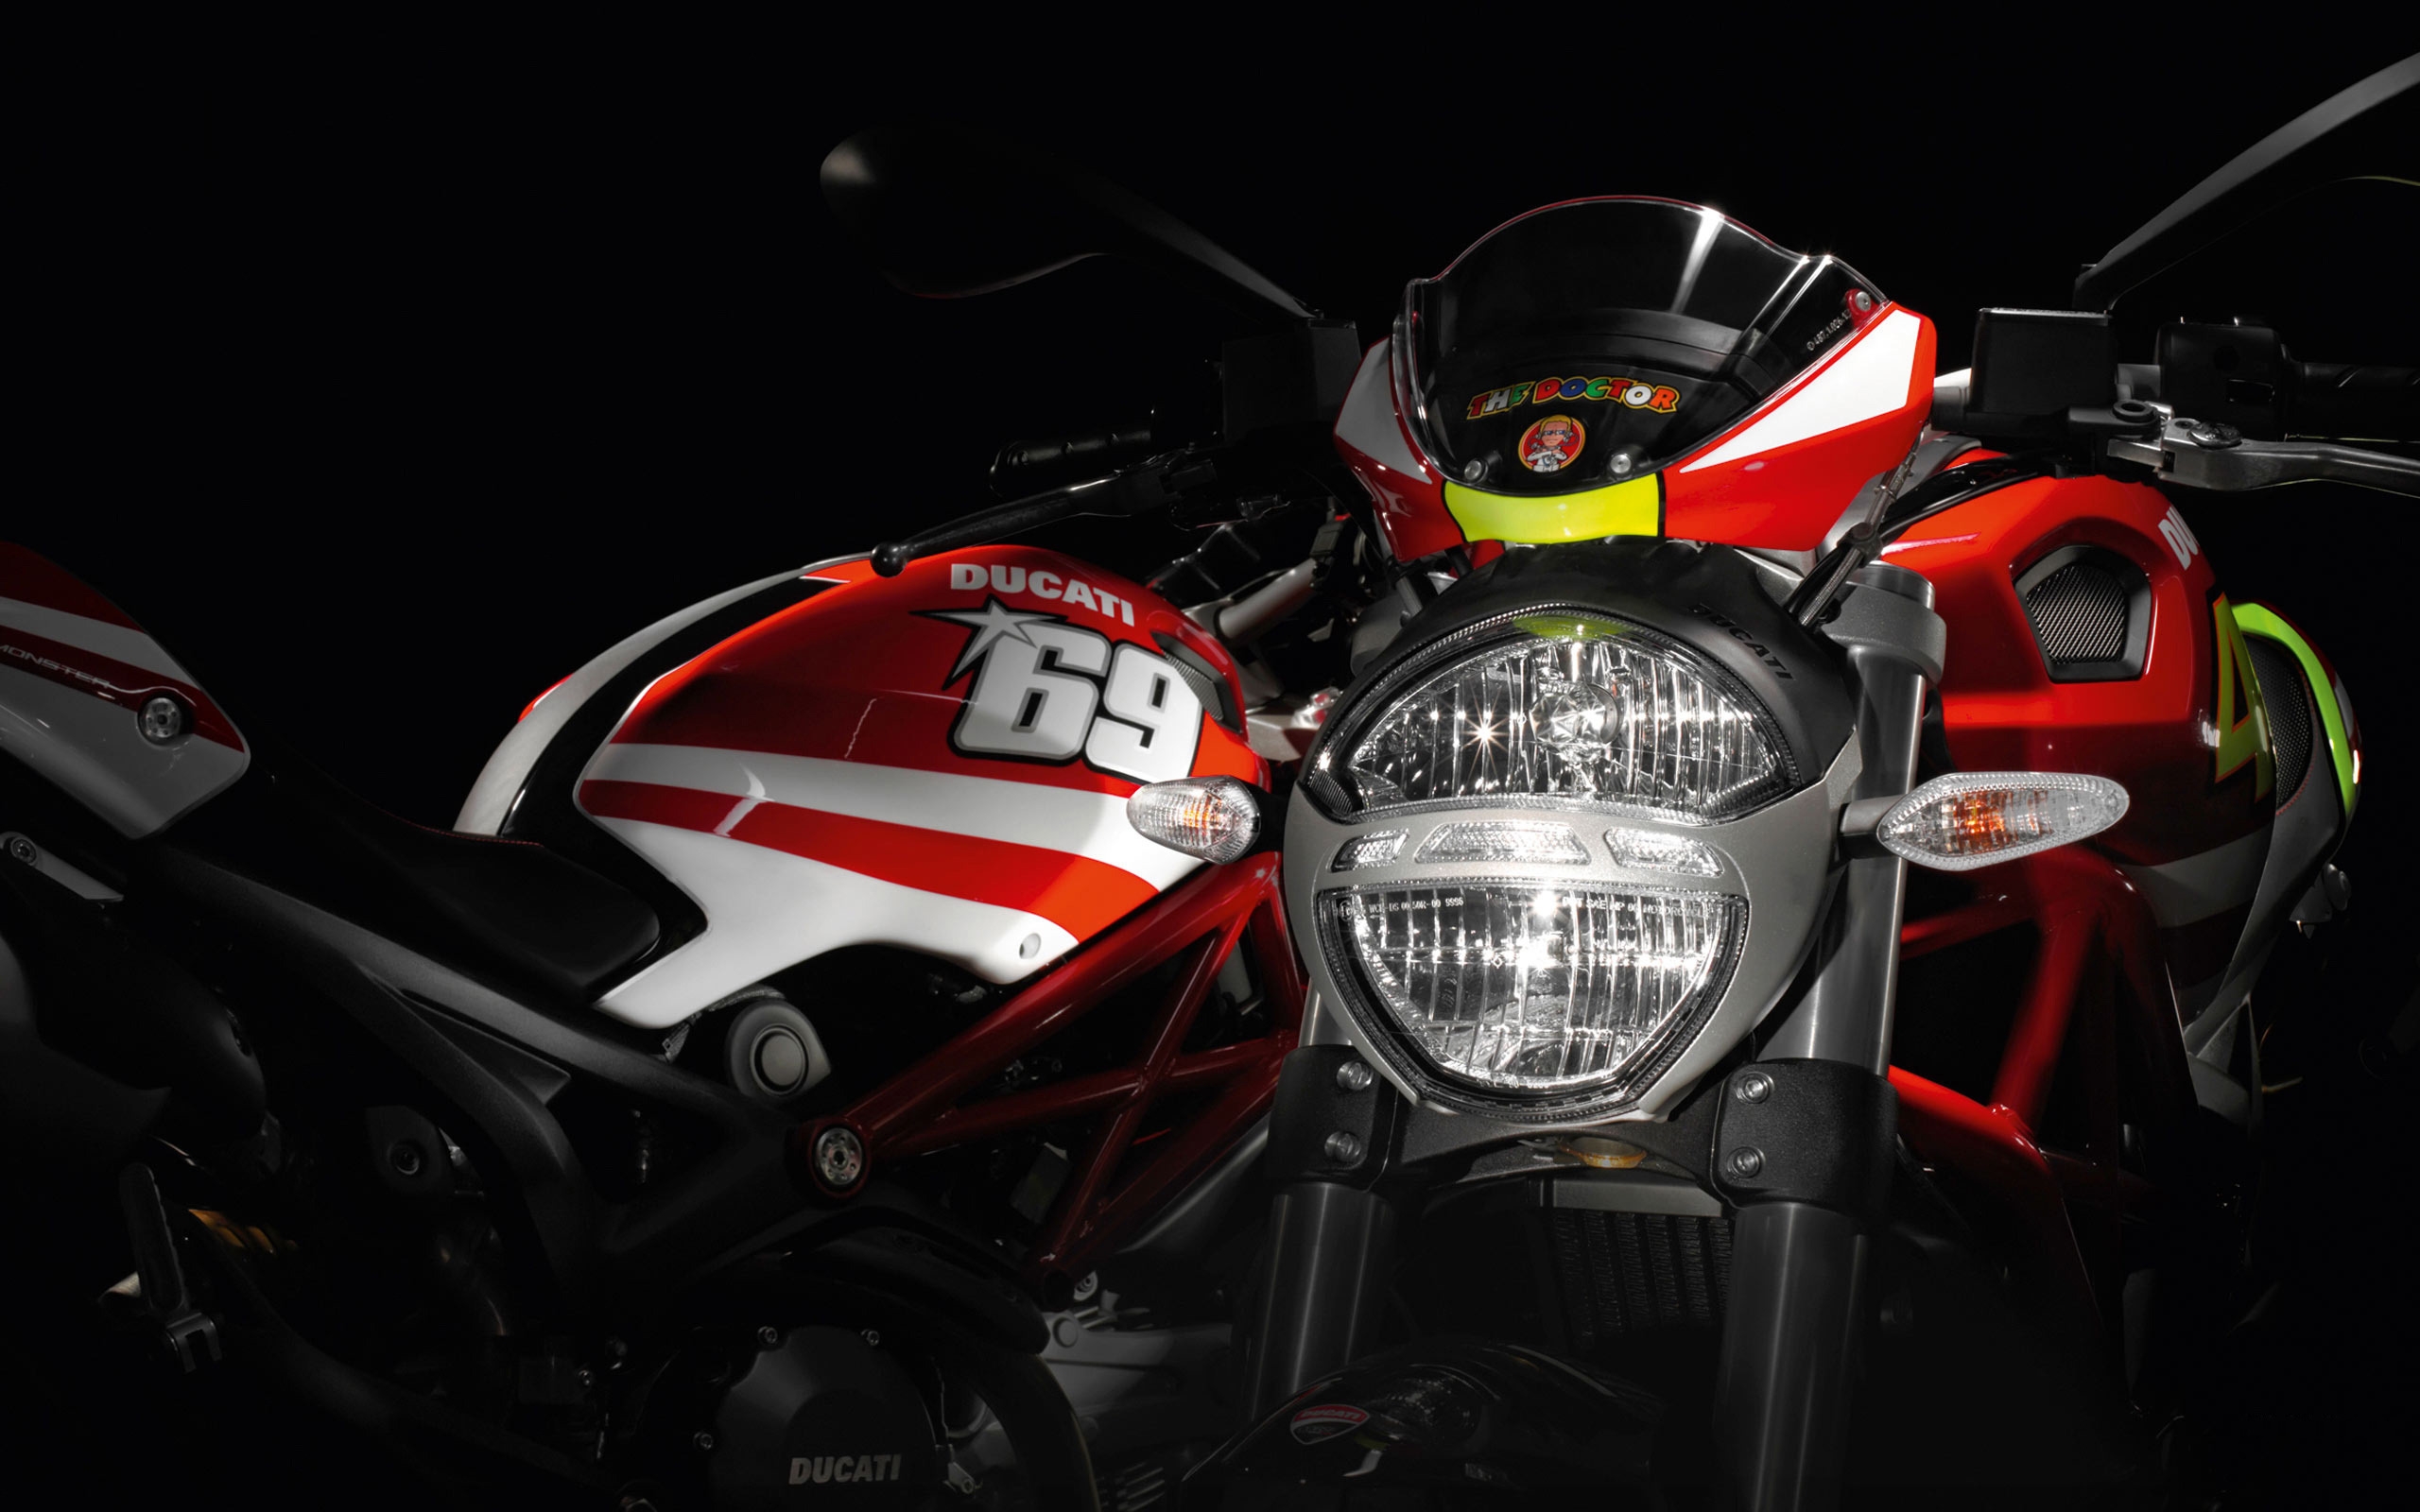 Ducati Rossi and Hayden Replica Ducati for 2560 x 1600 widescreen resolution